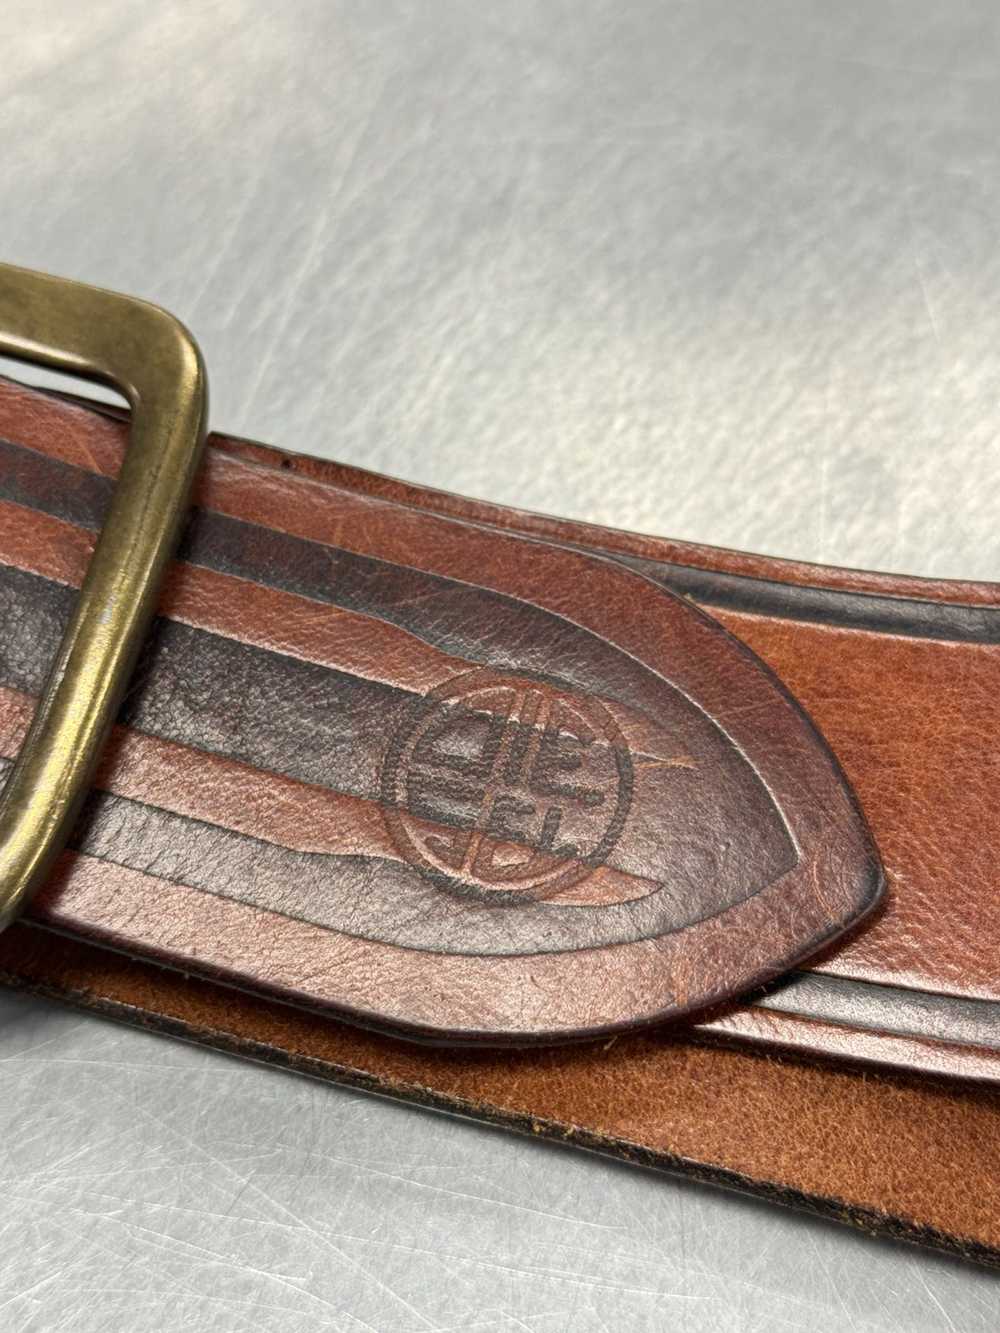 Diesel Diesel Brown Leather Belt - image 5